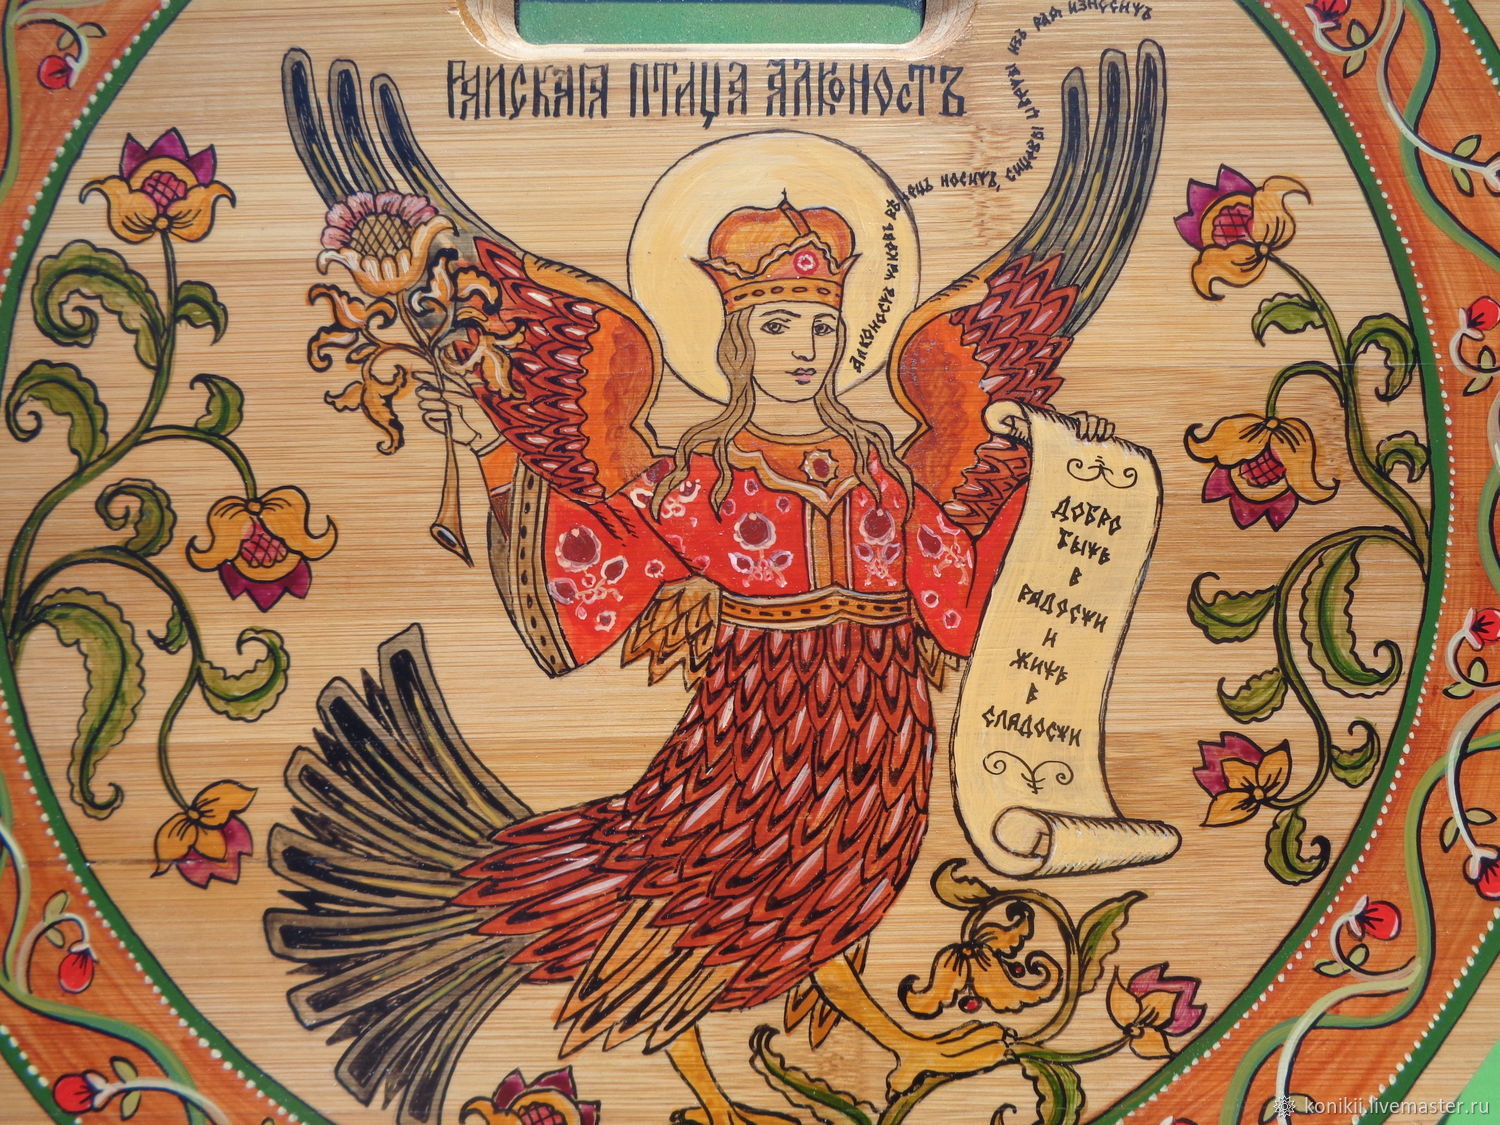 Сказочная птица с человеческим лицом 8 букв. Великоустюжская роспись птица Сирин.